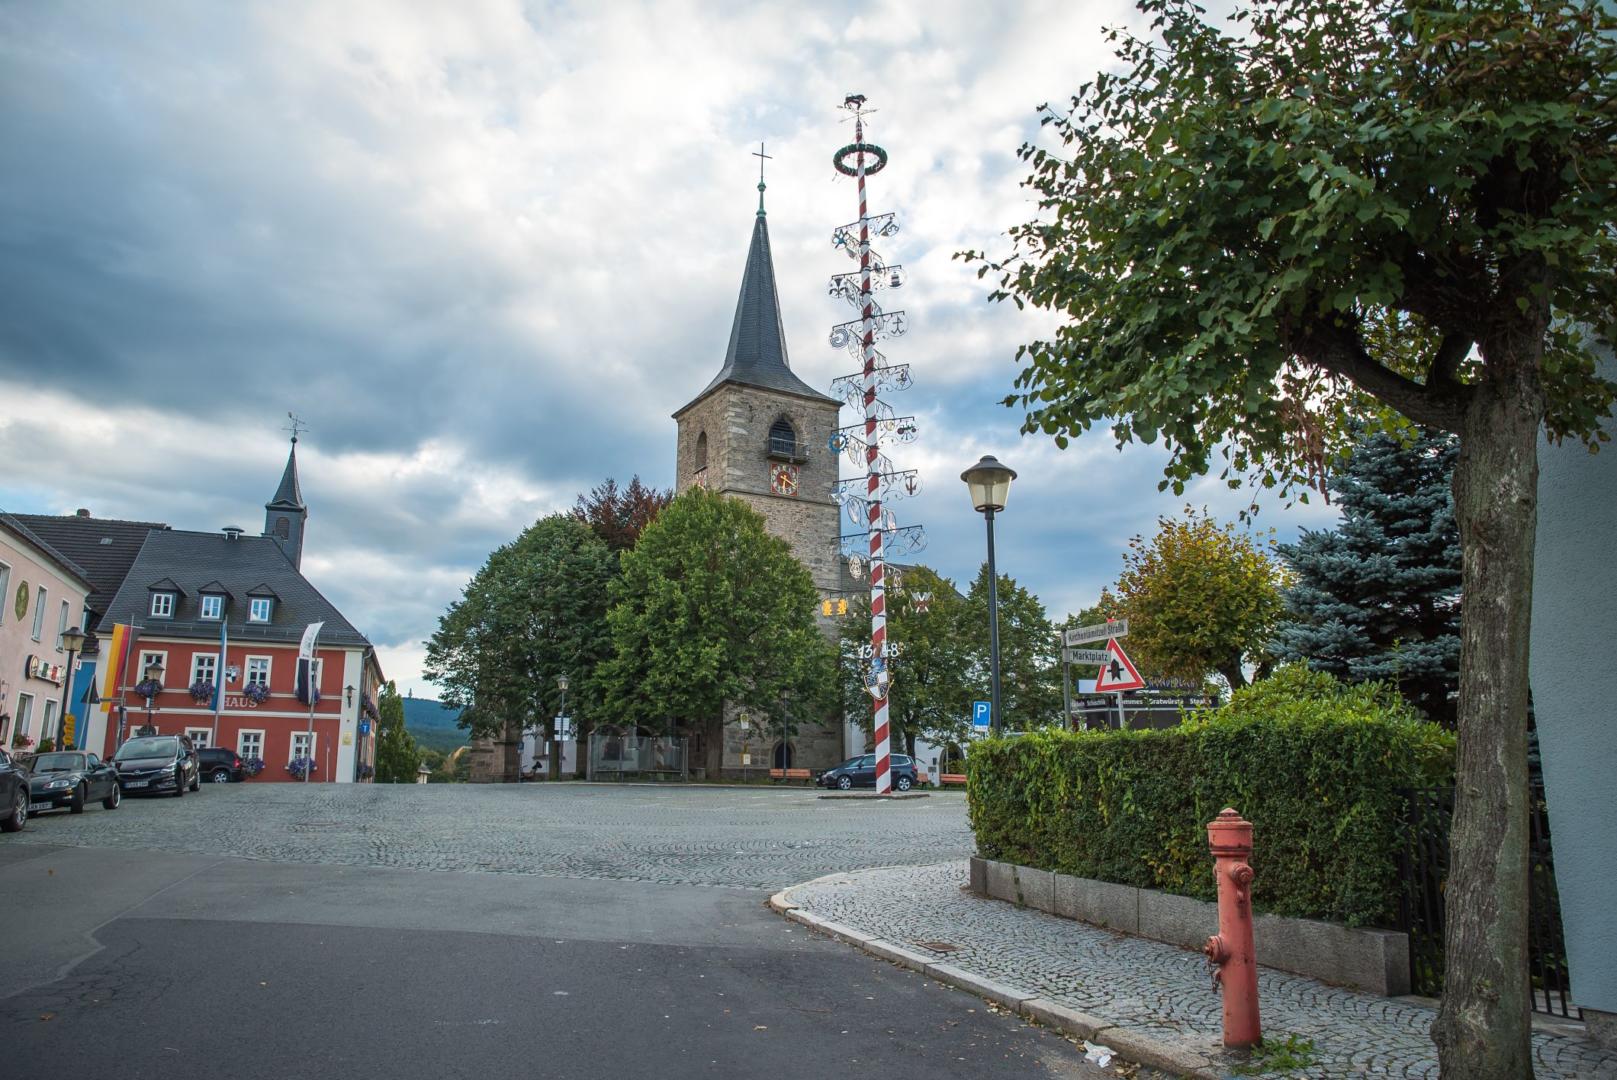 Ansich der Marktplatzes mit Turm der Stadtkirche aus Richtung Kirchenlamiter Straße